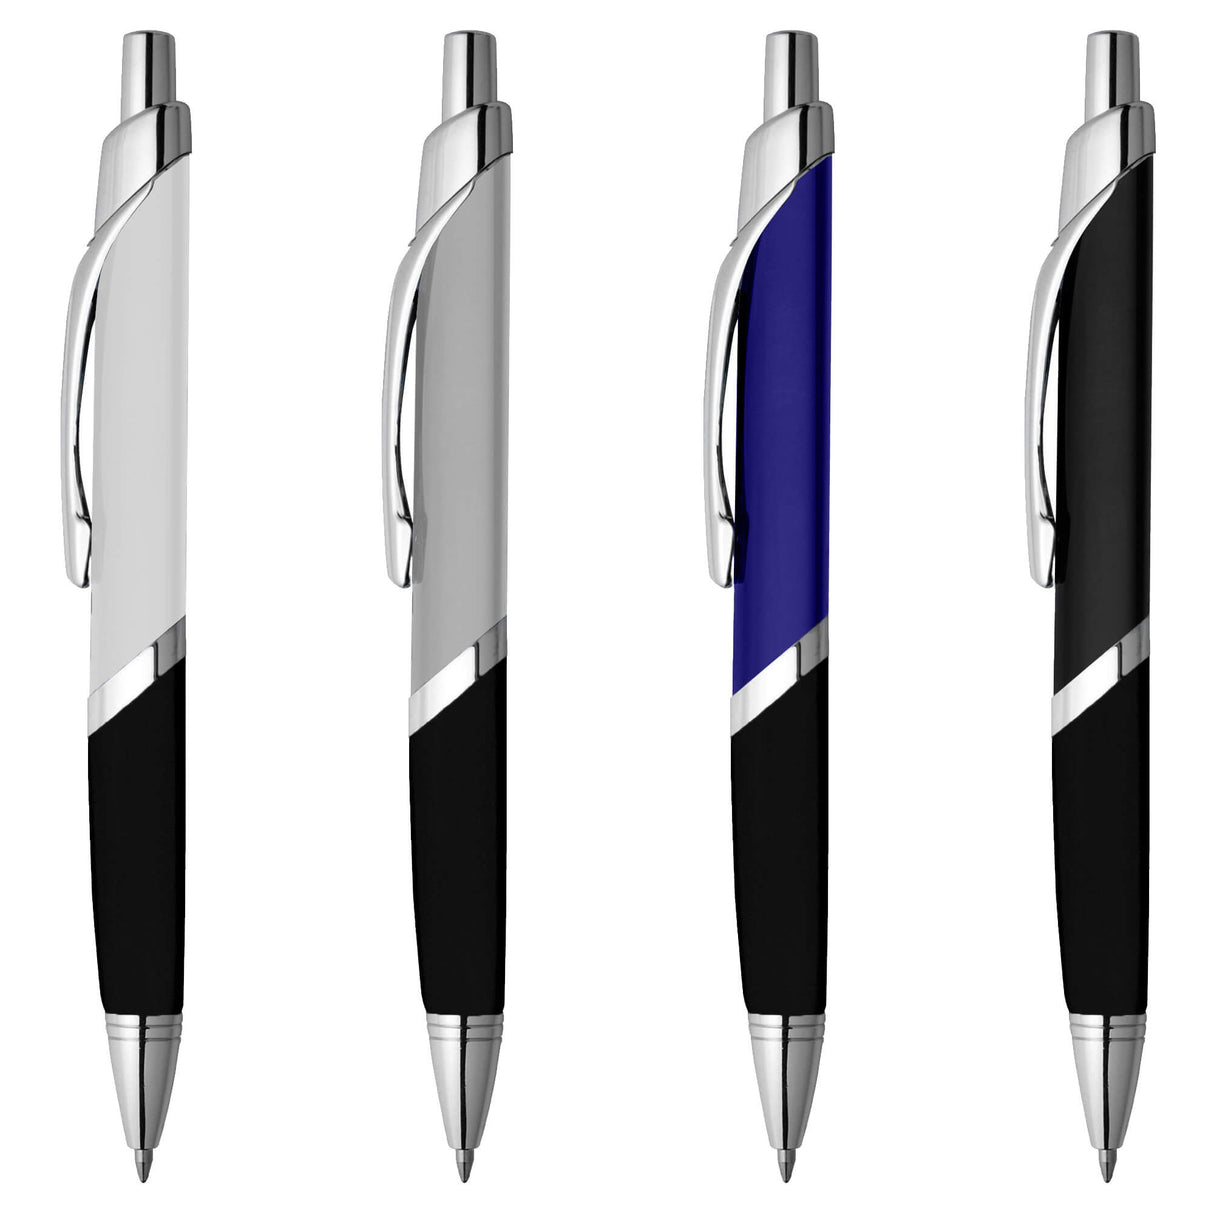 Splice Silver Pen - Engraved